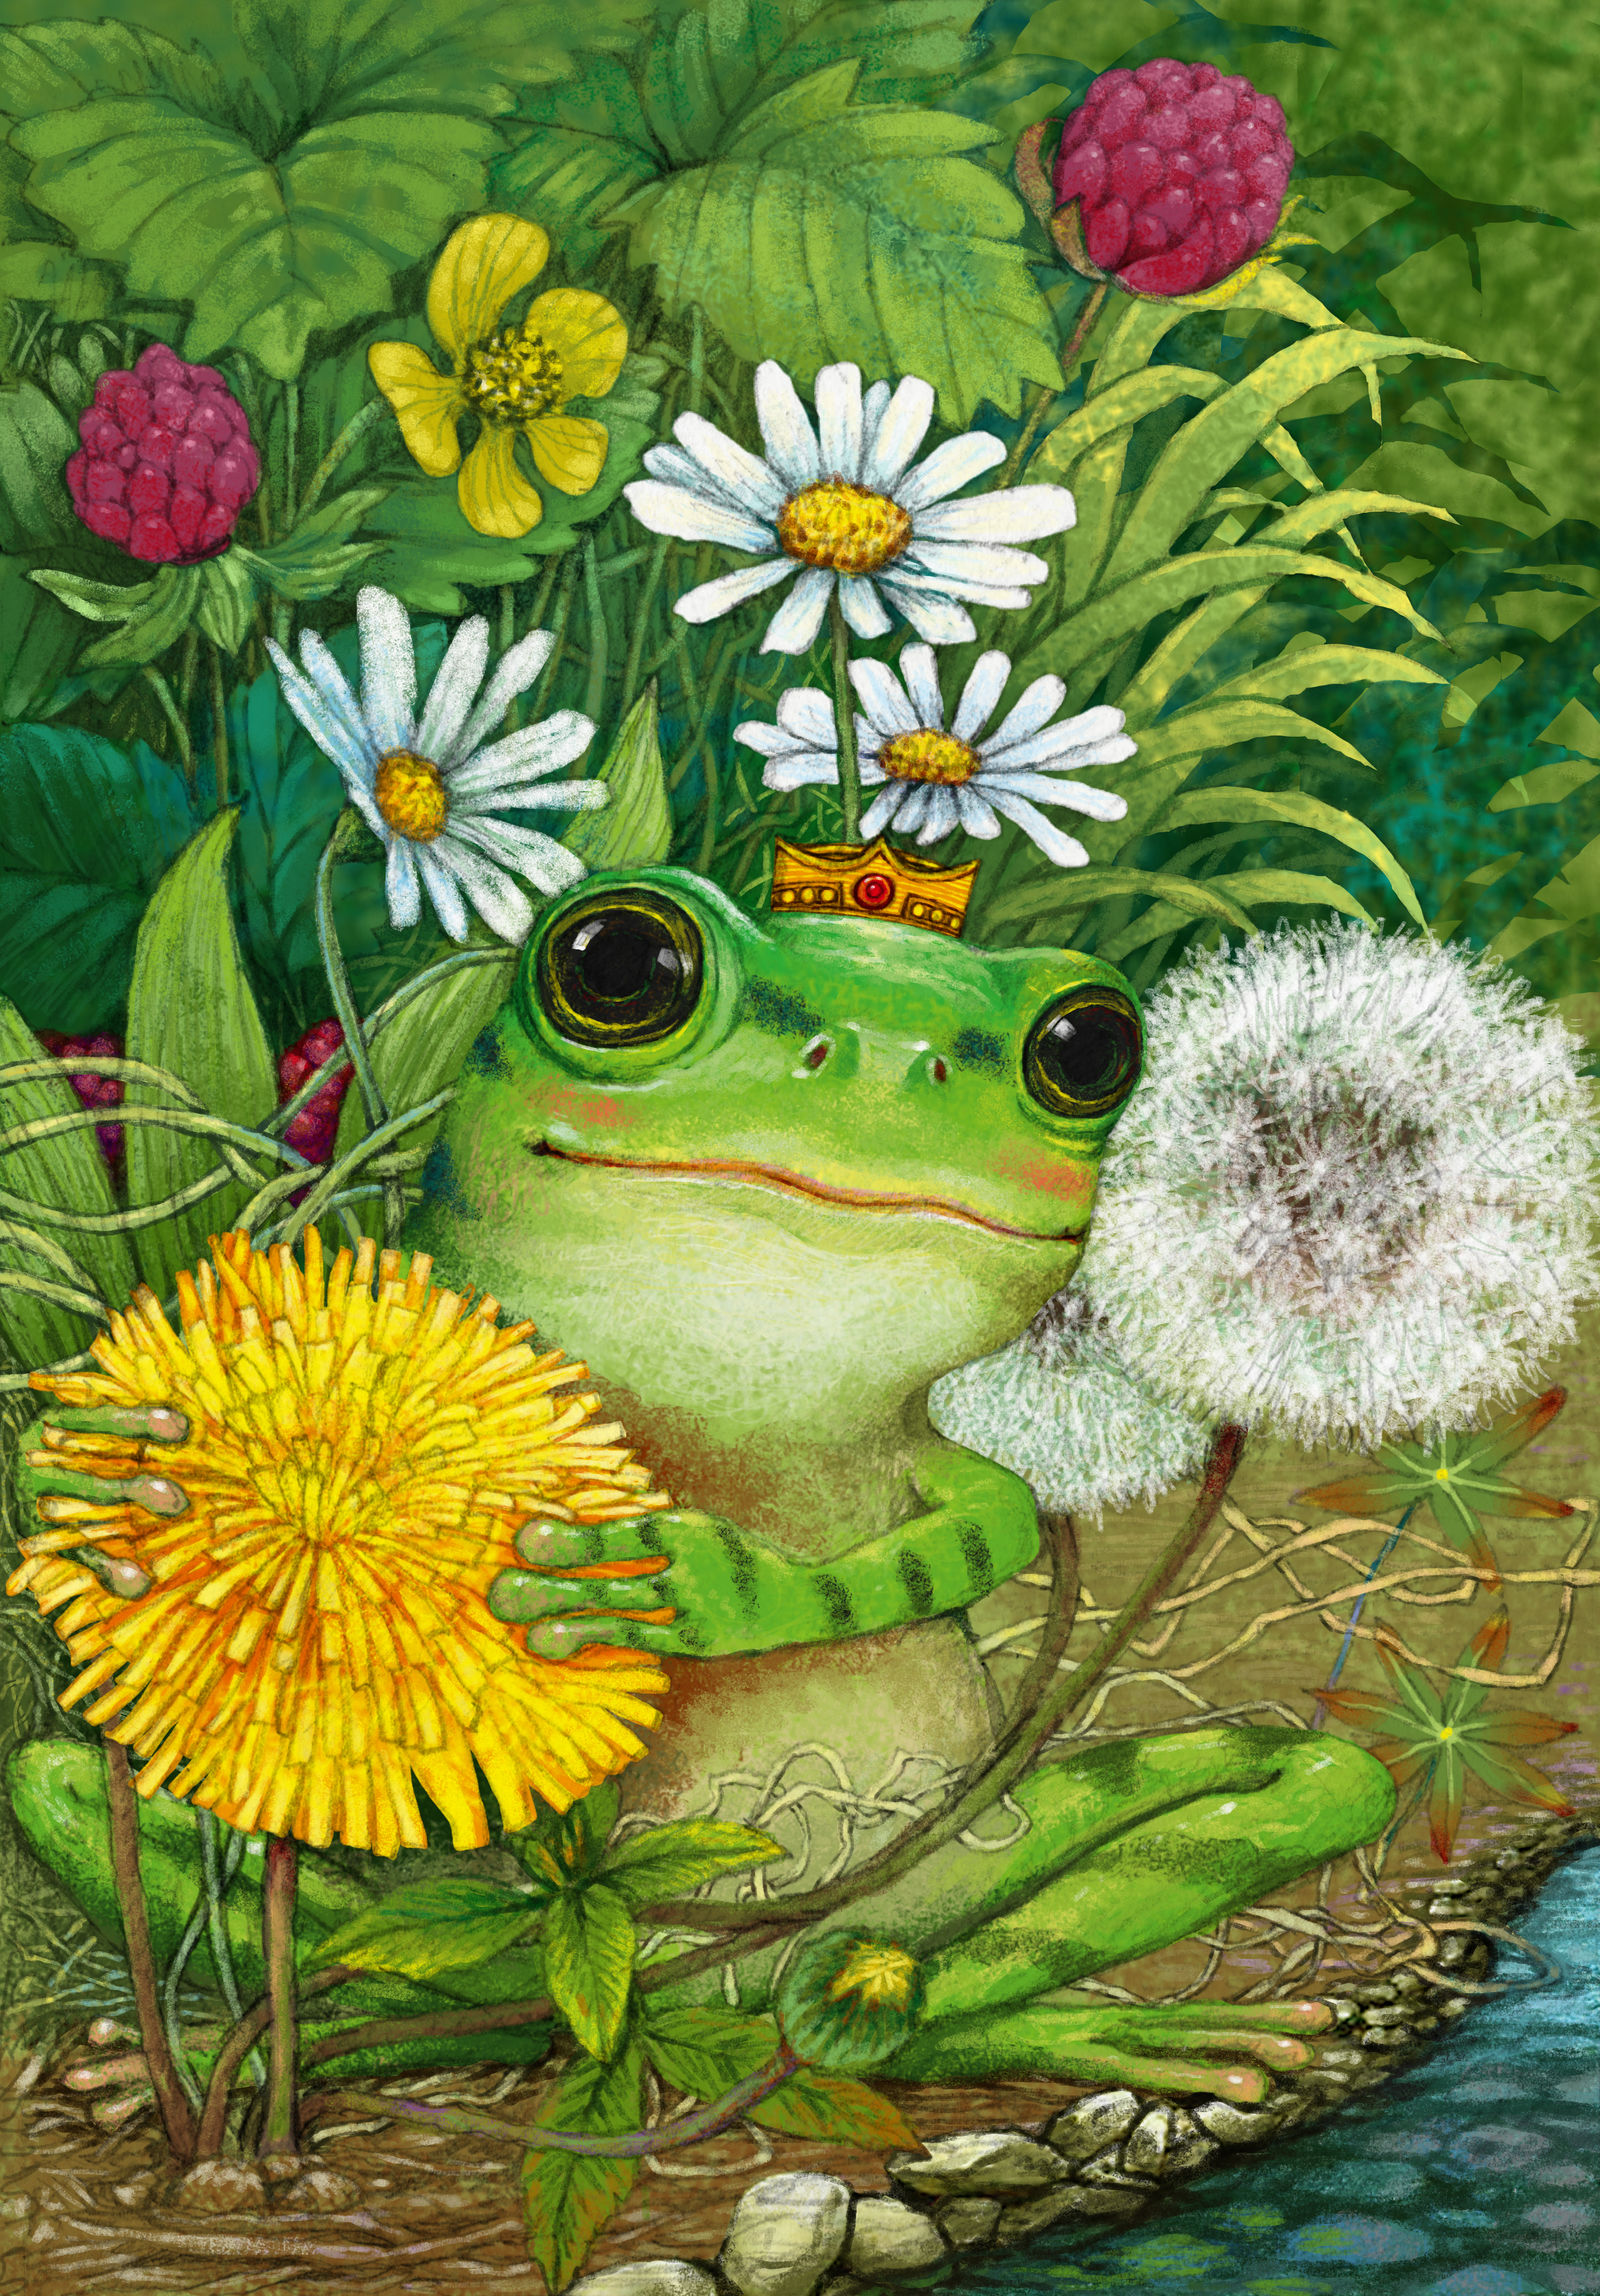 抱着蒲公英画的青蛙王子插画图片壁纸